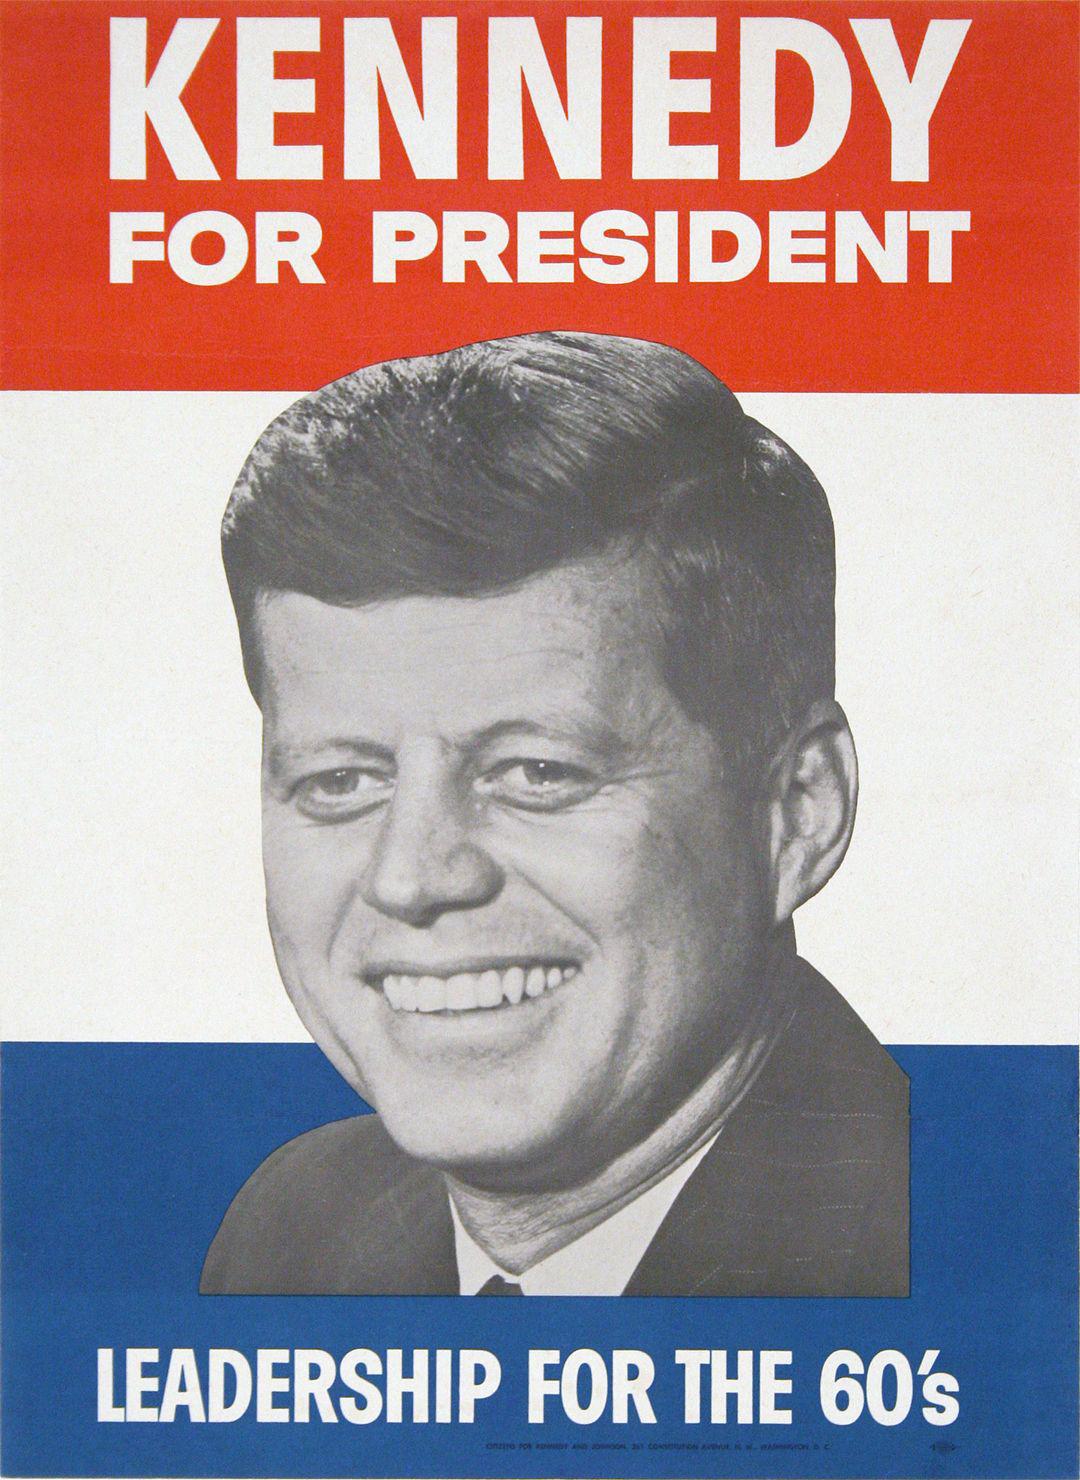 Original Kennedy fosr President JFK Poster 1960 Leadership for the 60's